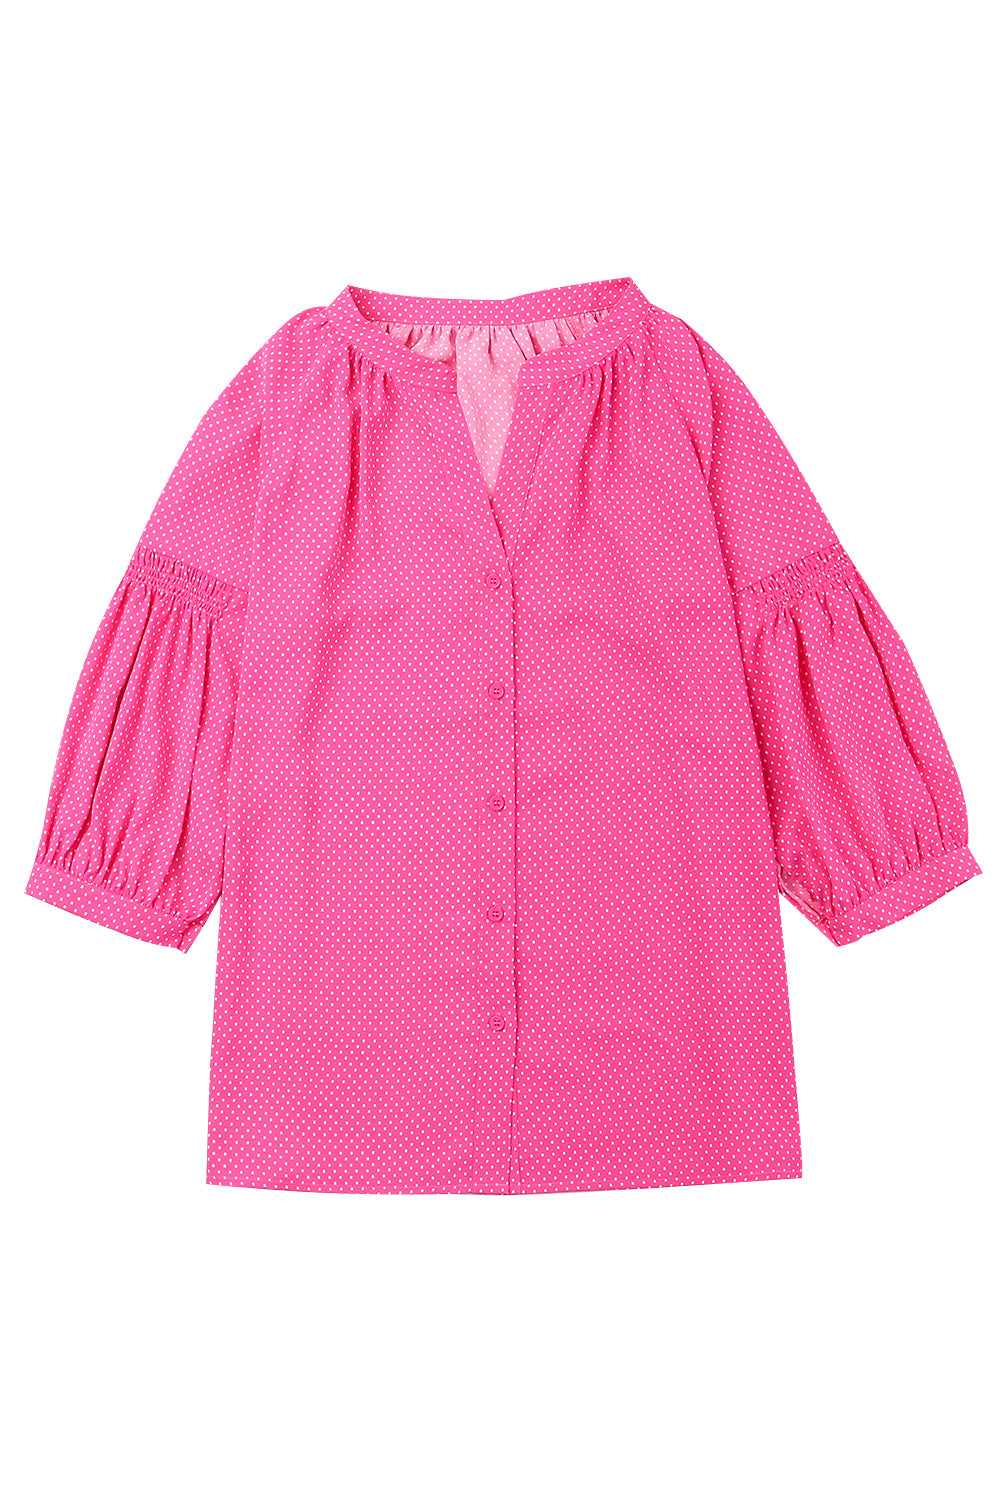 Rožnata ohlapna srajca s 3/4 rokavi in ​​pikčastim potiskom